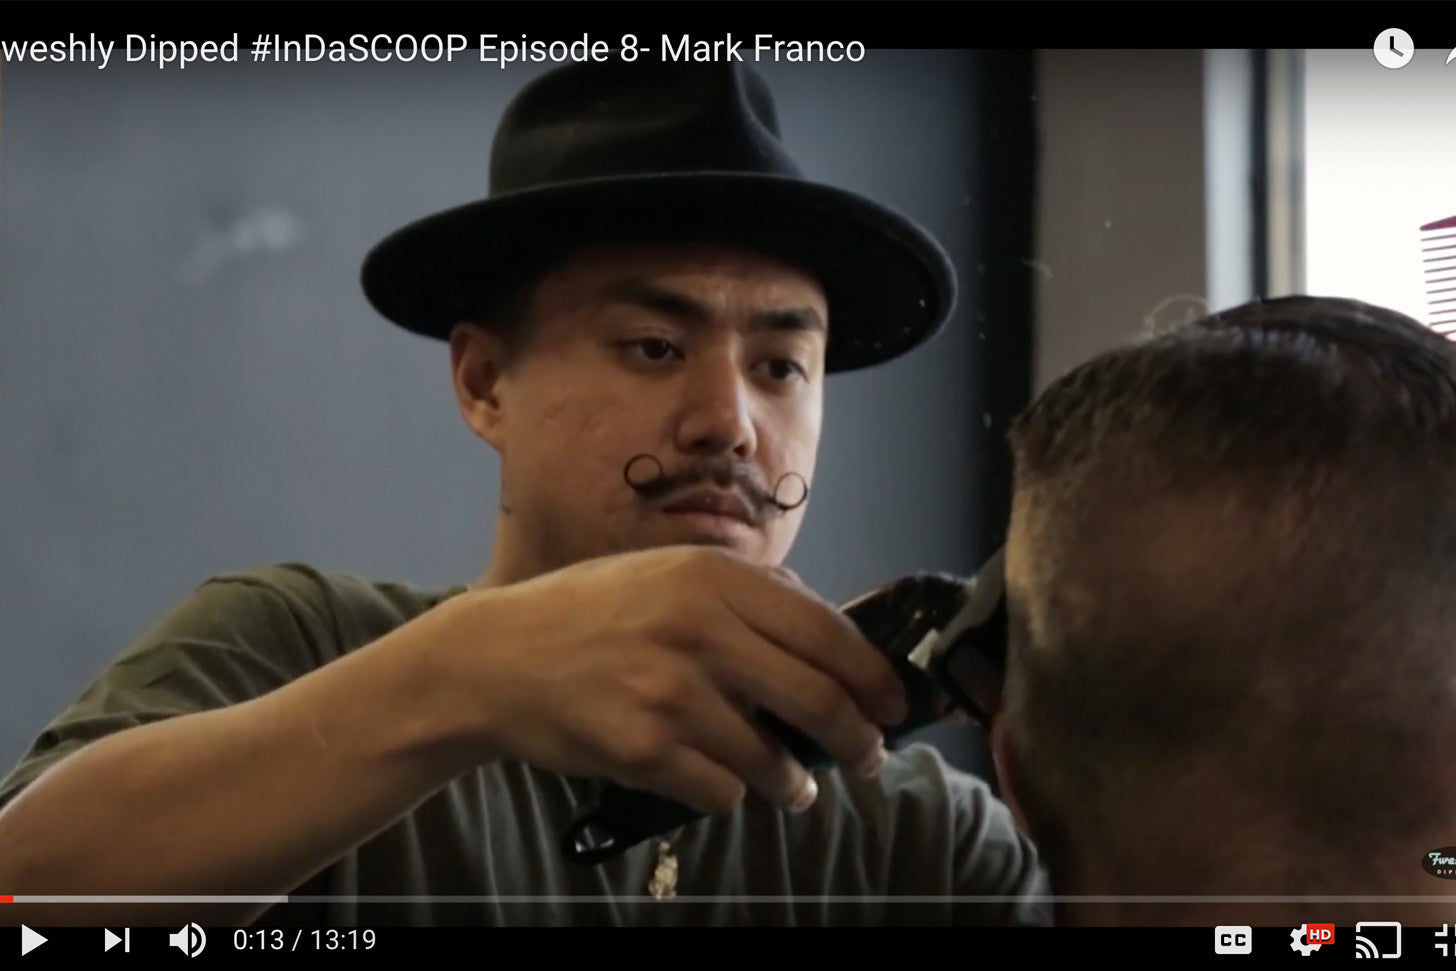 #InDaSCOOP Episode 8: Mark Franco